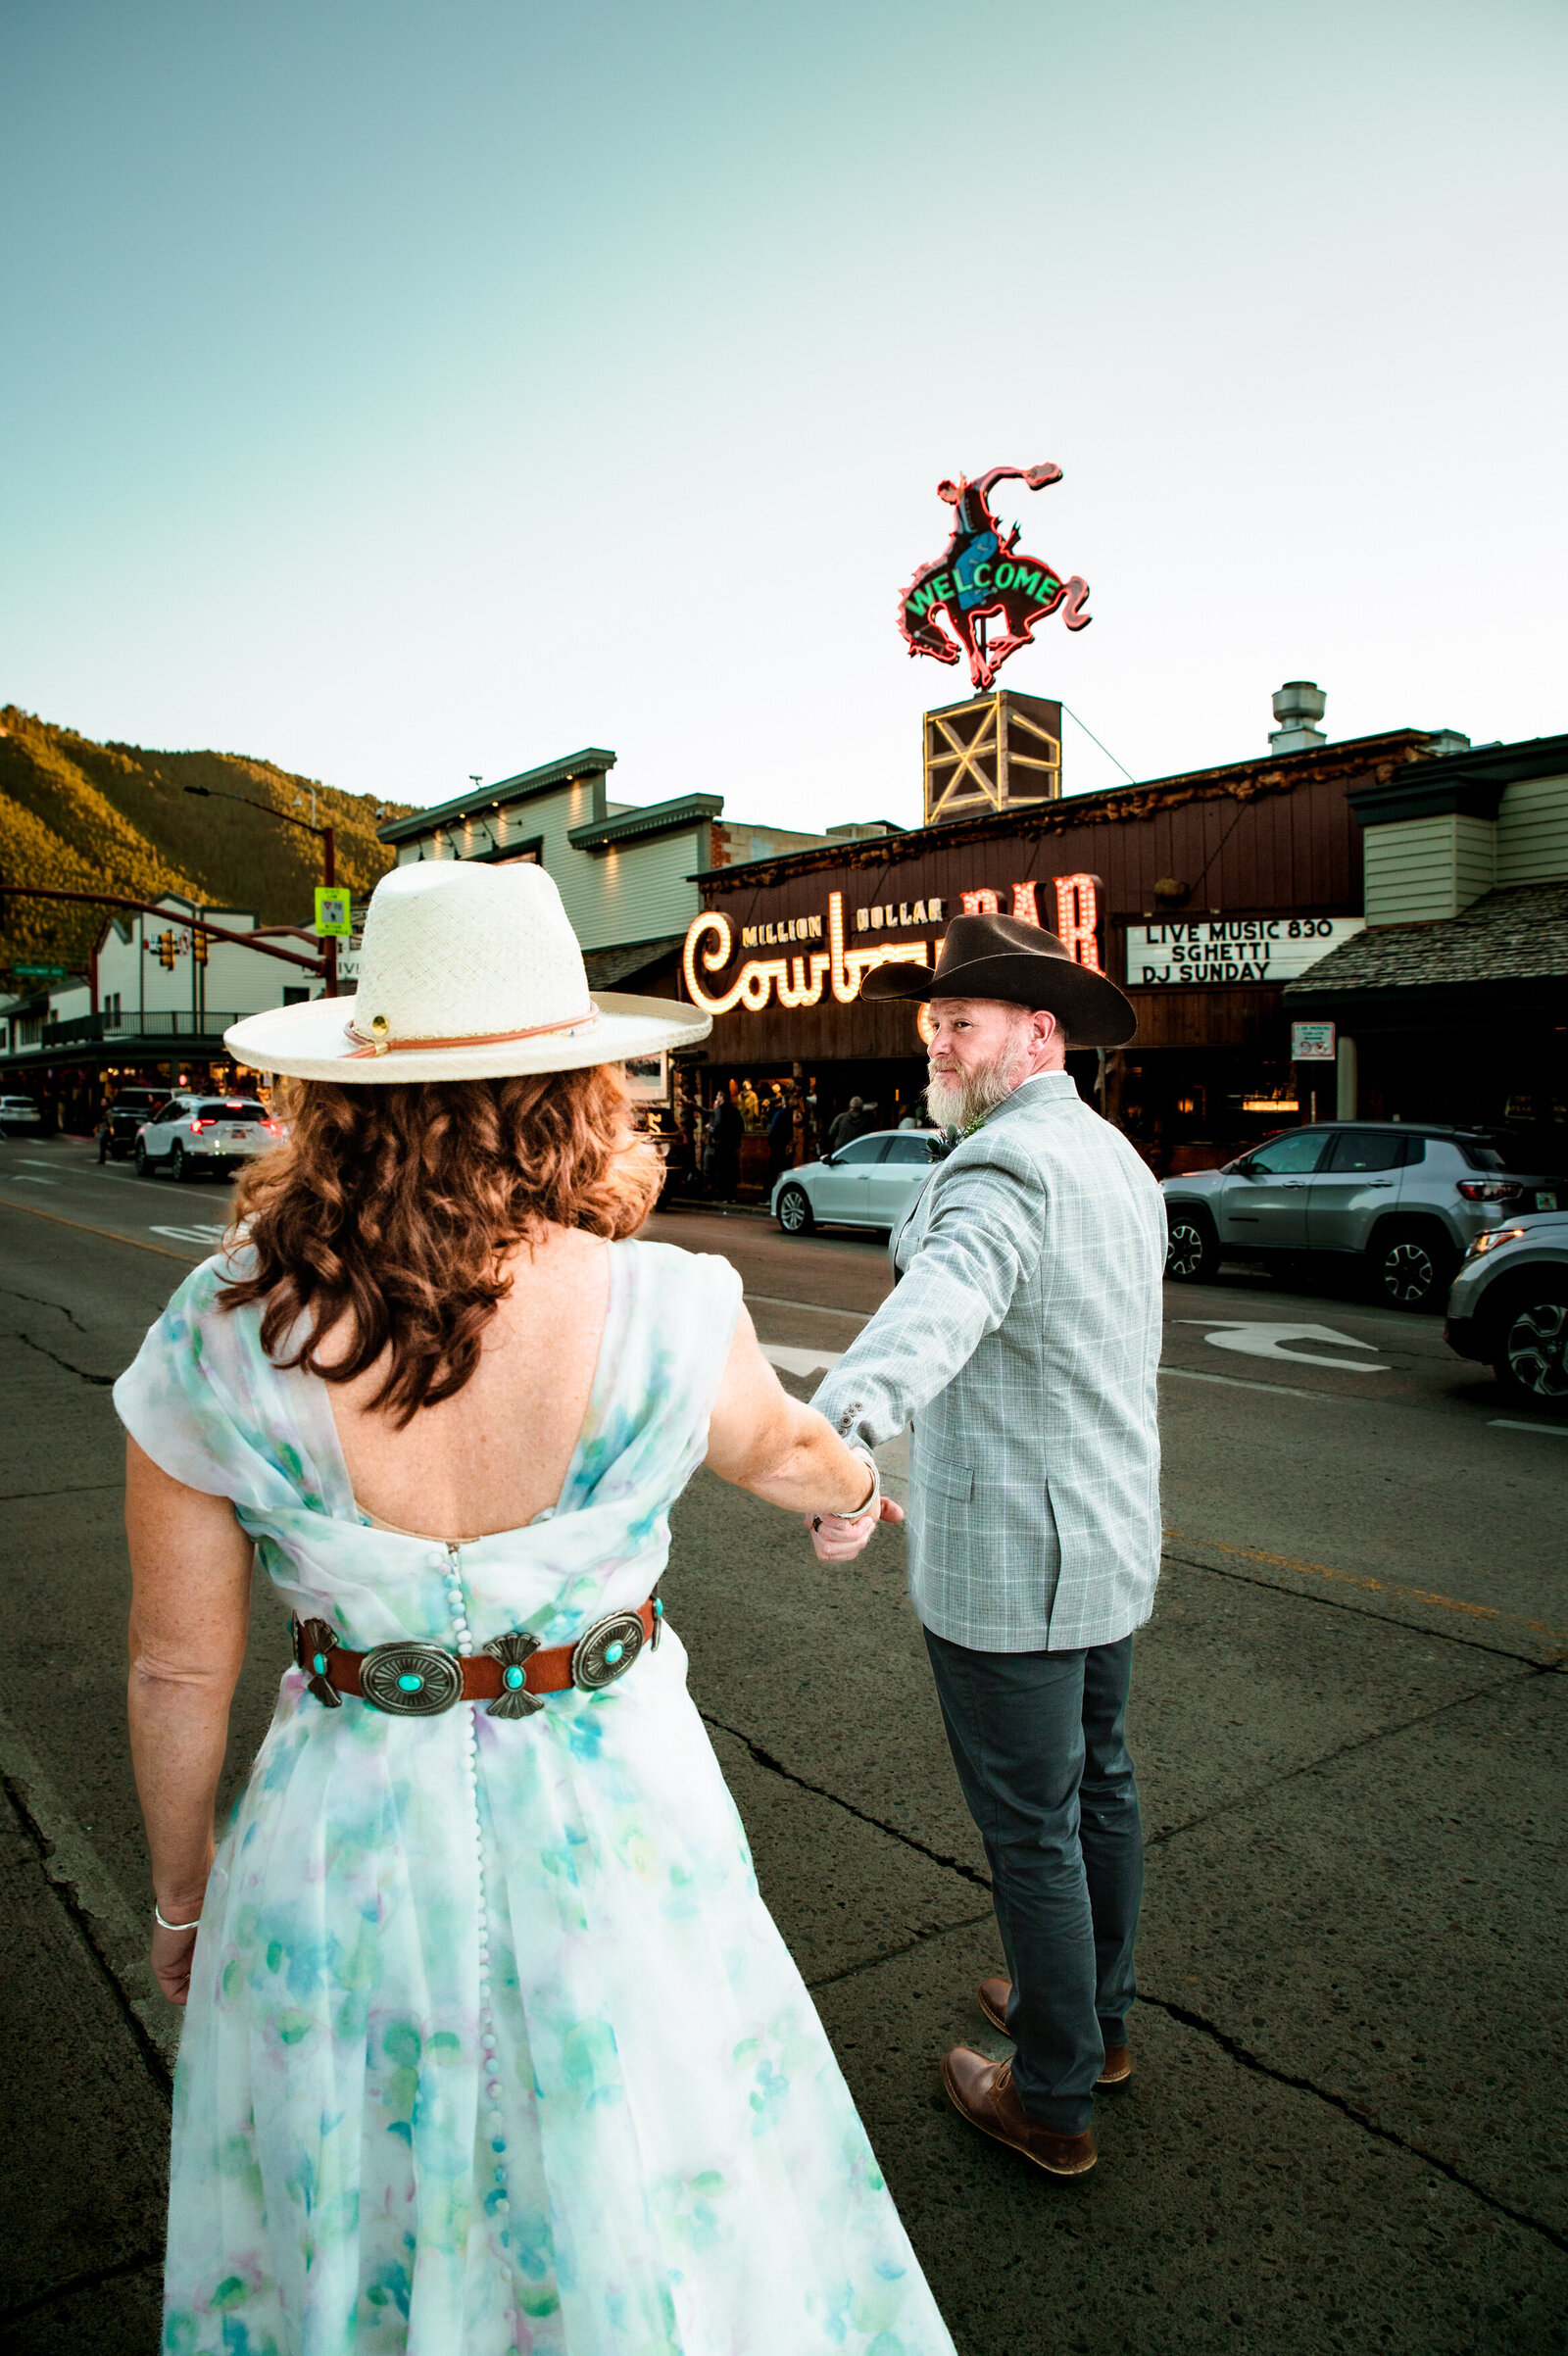 Jackson Hole videographer captures outdoor bridal portraits after Jackson Hole elopement